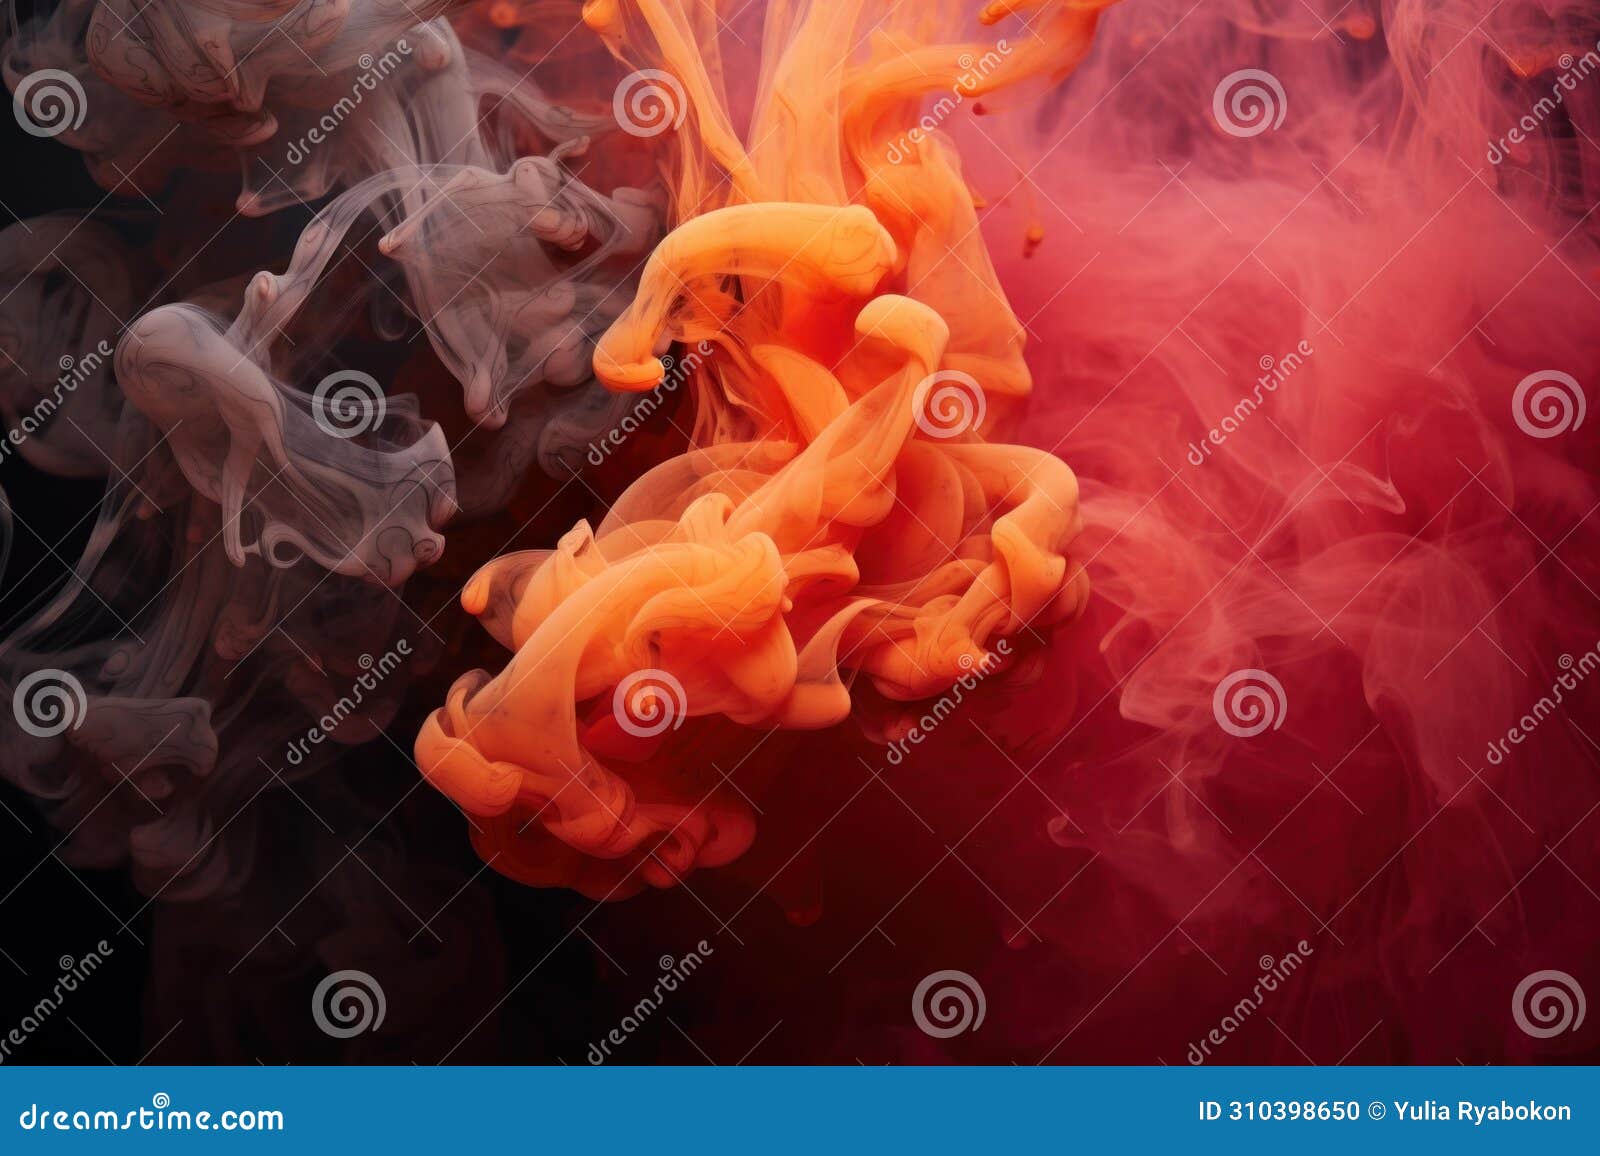 poignant fine art woman photo in colorful smoke. generate ai